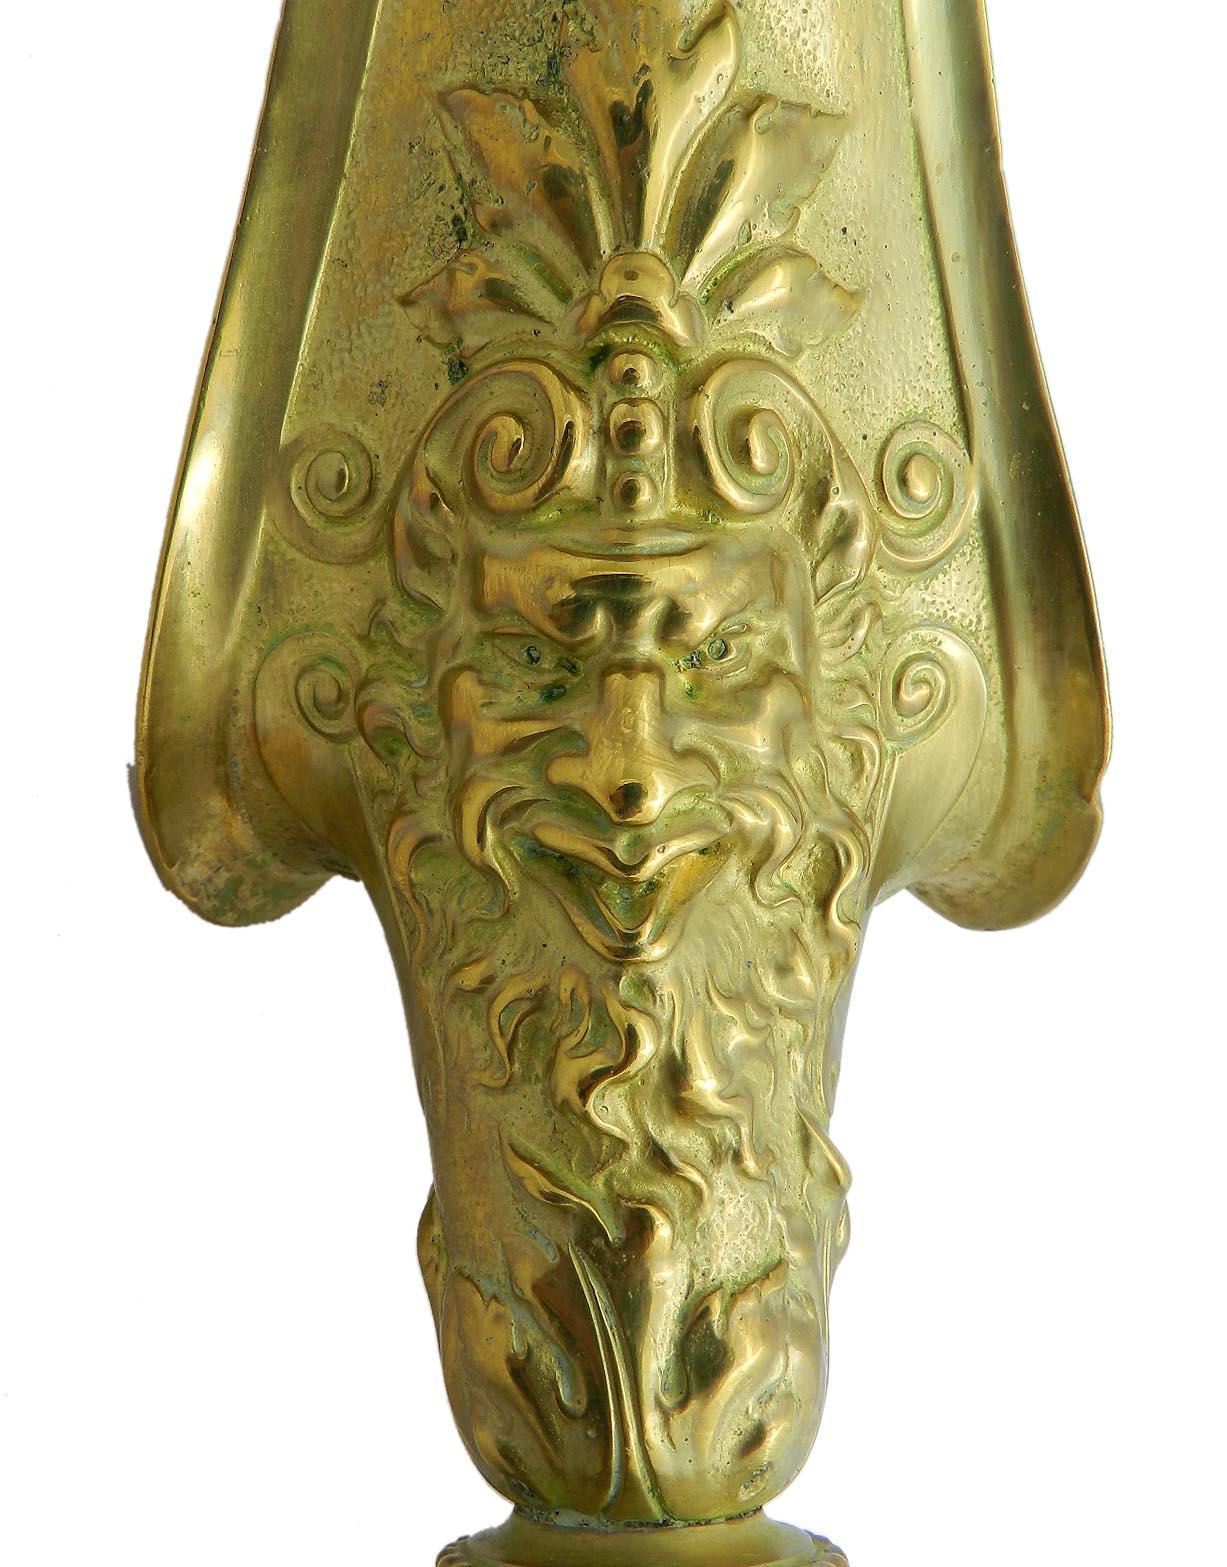 Pichet à aiguière en bronze doré 19e siècle bronze doré Renaissance Revival
Lourd et solide 
Décoratif et impressionnant
Bon état ancien. 

    